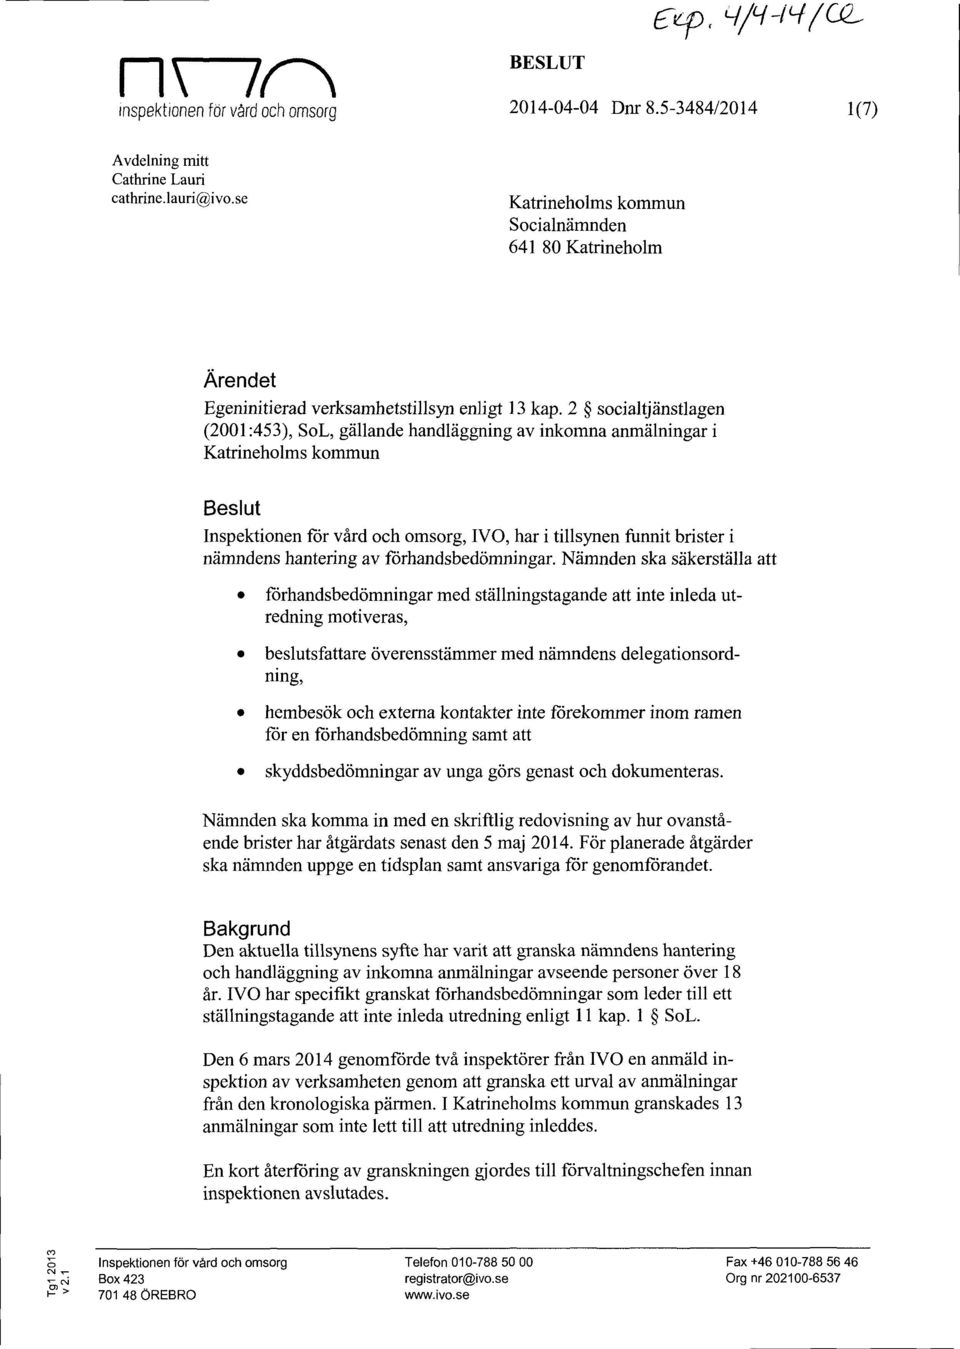 2 socialtjänstlagen (2001:453), SoL, gällande handläggning av inkomna anmälningar i Katrineholms kommun Beslut Inspektionen för vård och omsorg, IVO, har i tillsynen funnit brister i nämndens